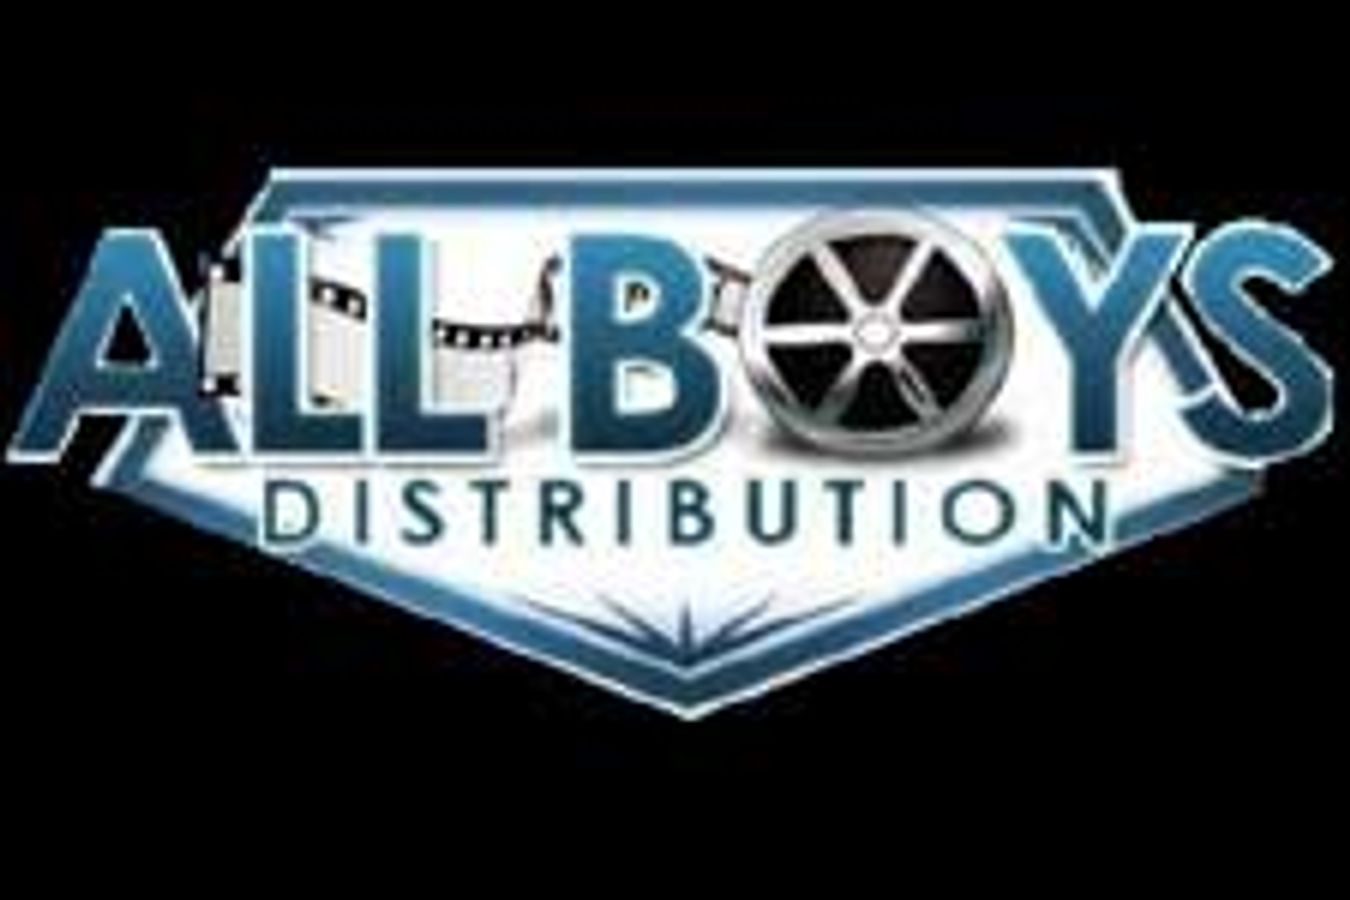 All Boys Distribution